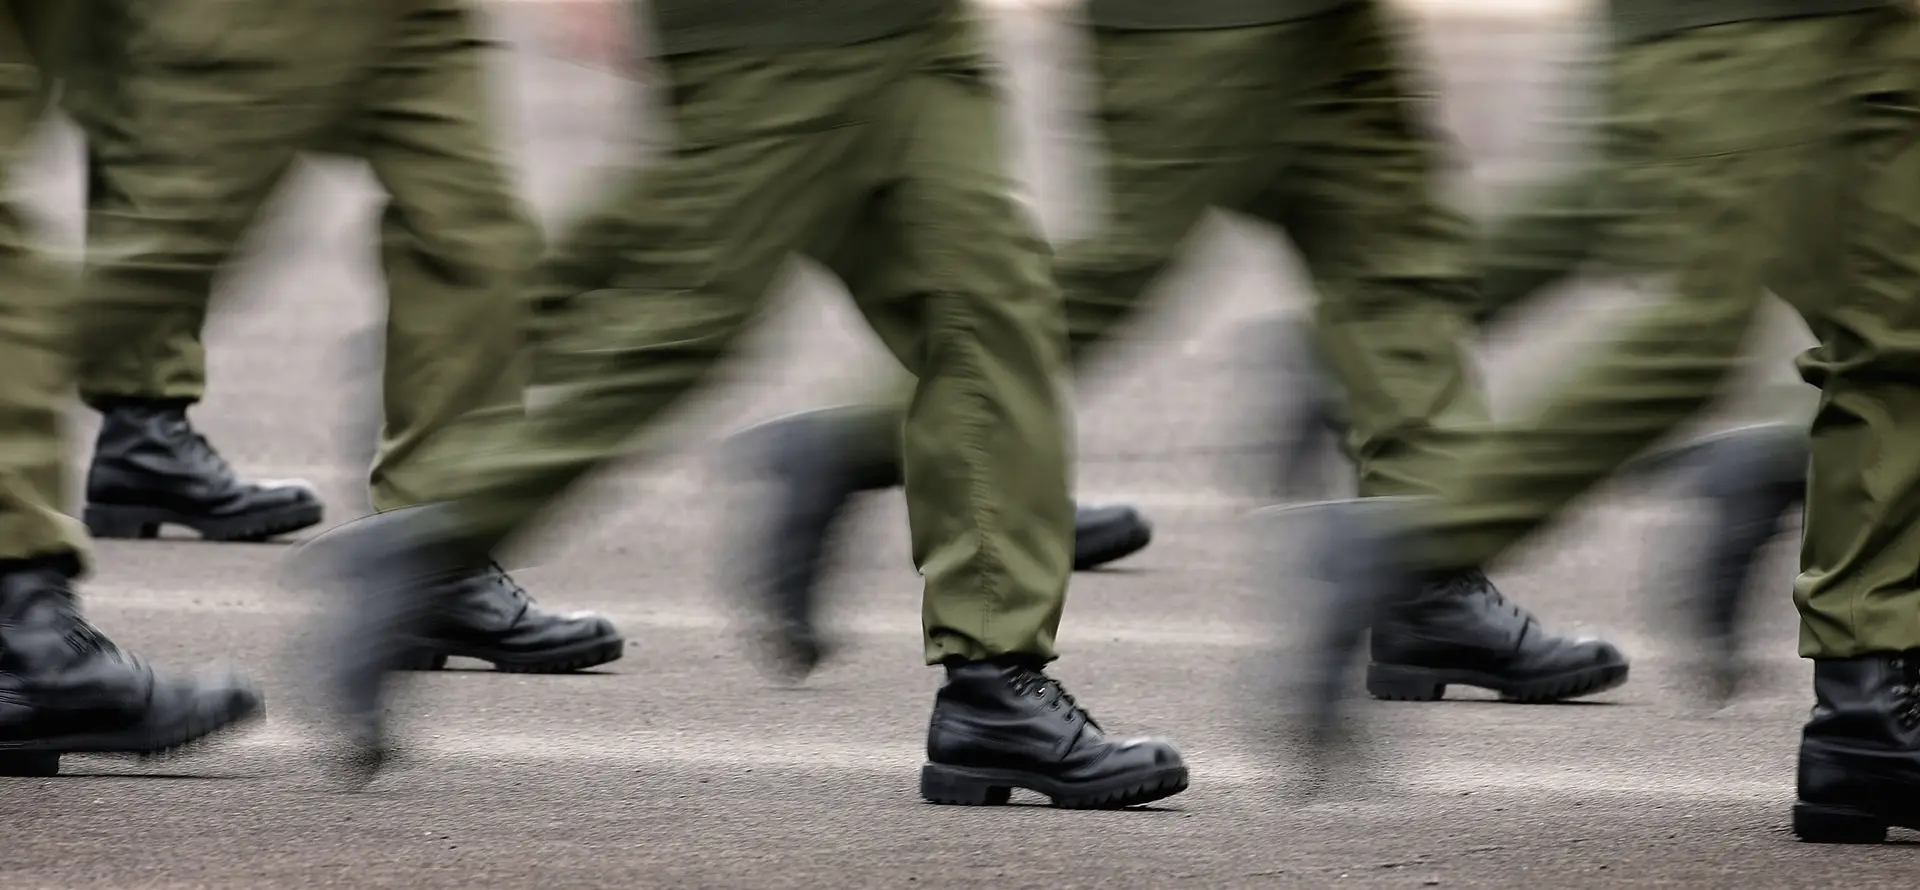 138.º curso de Comandos: Exército explica-se e instaura processos disciplinares